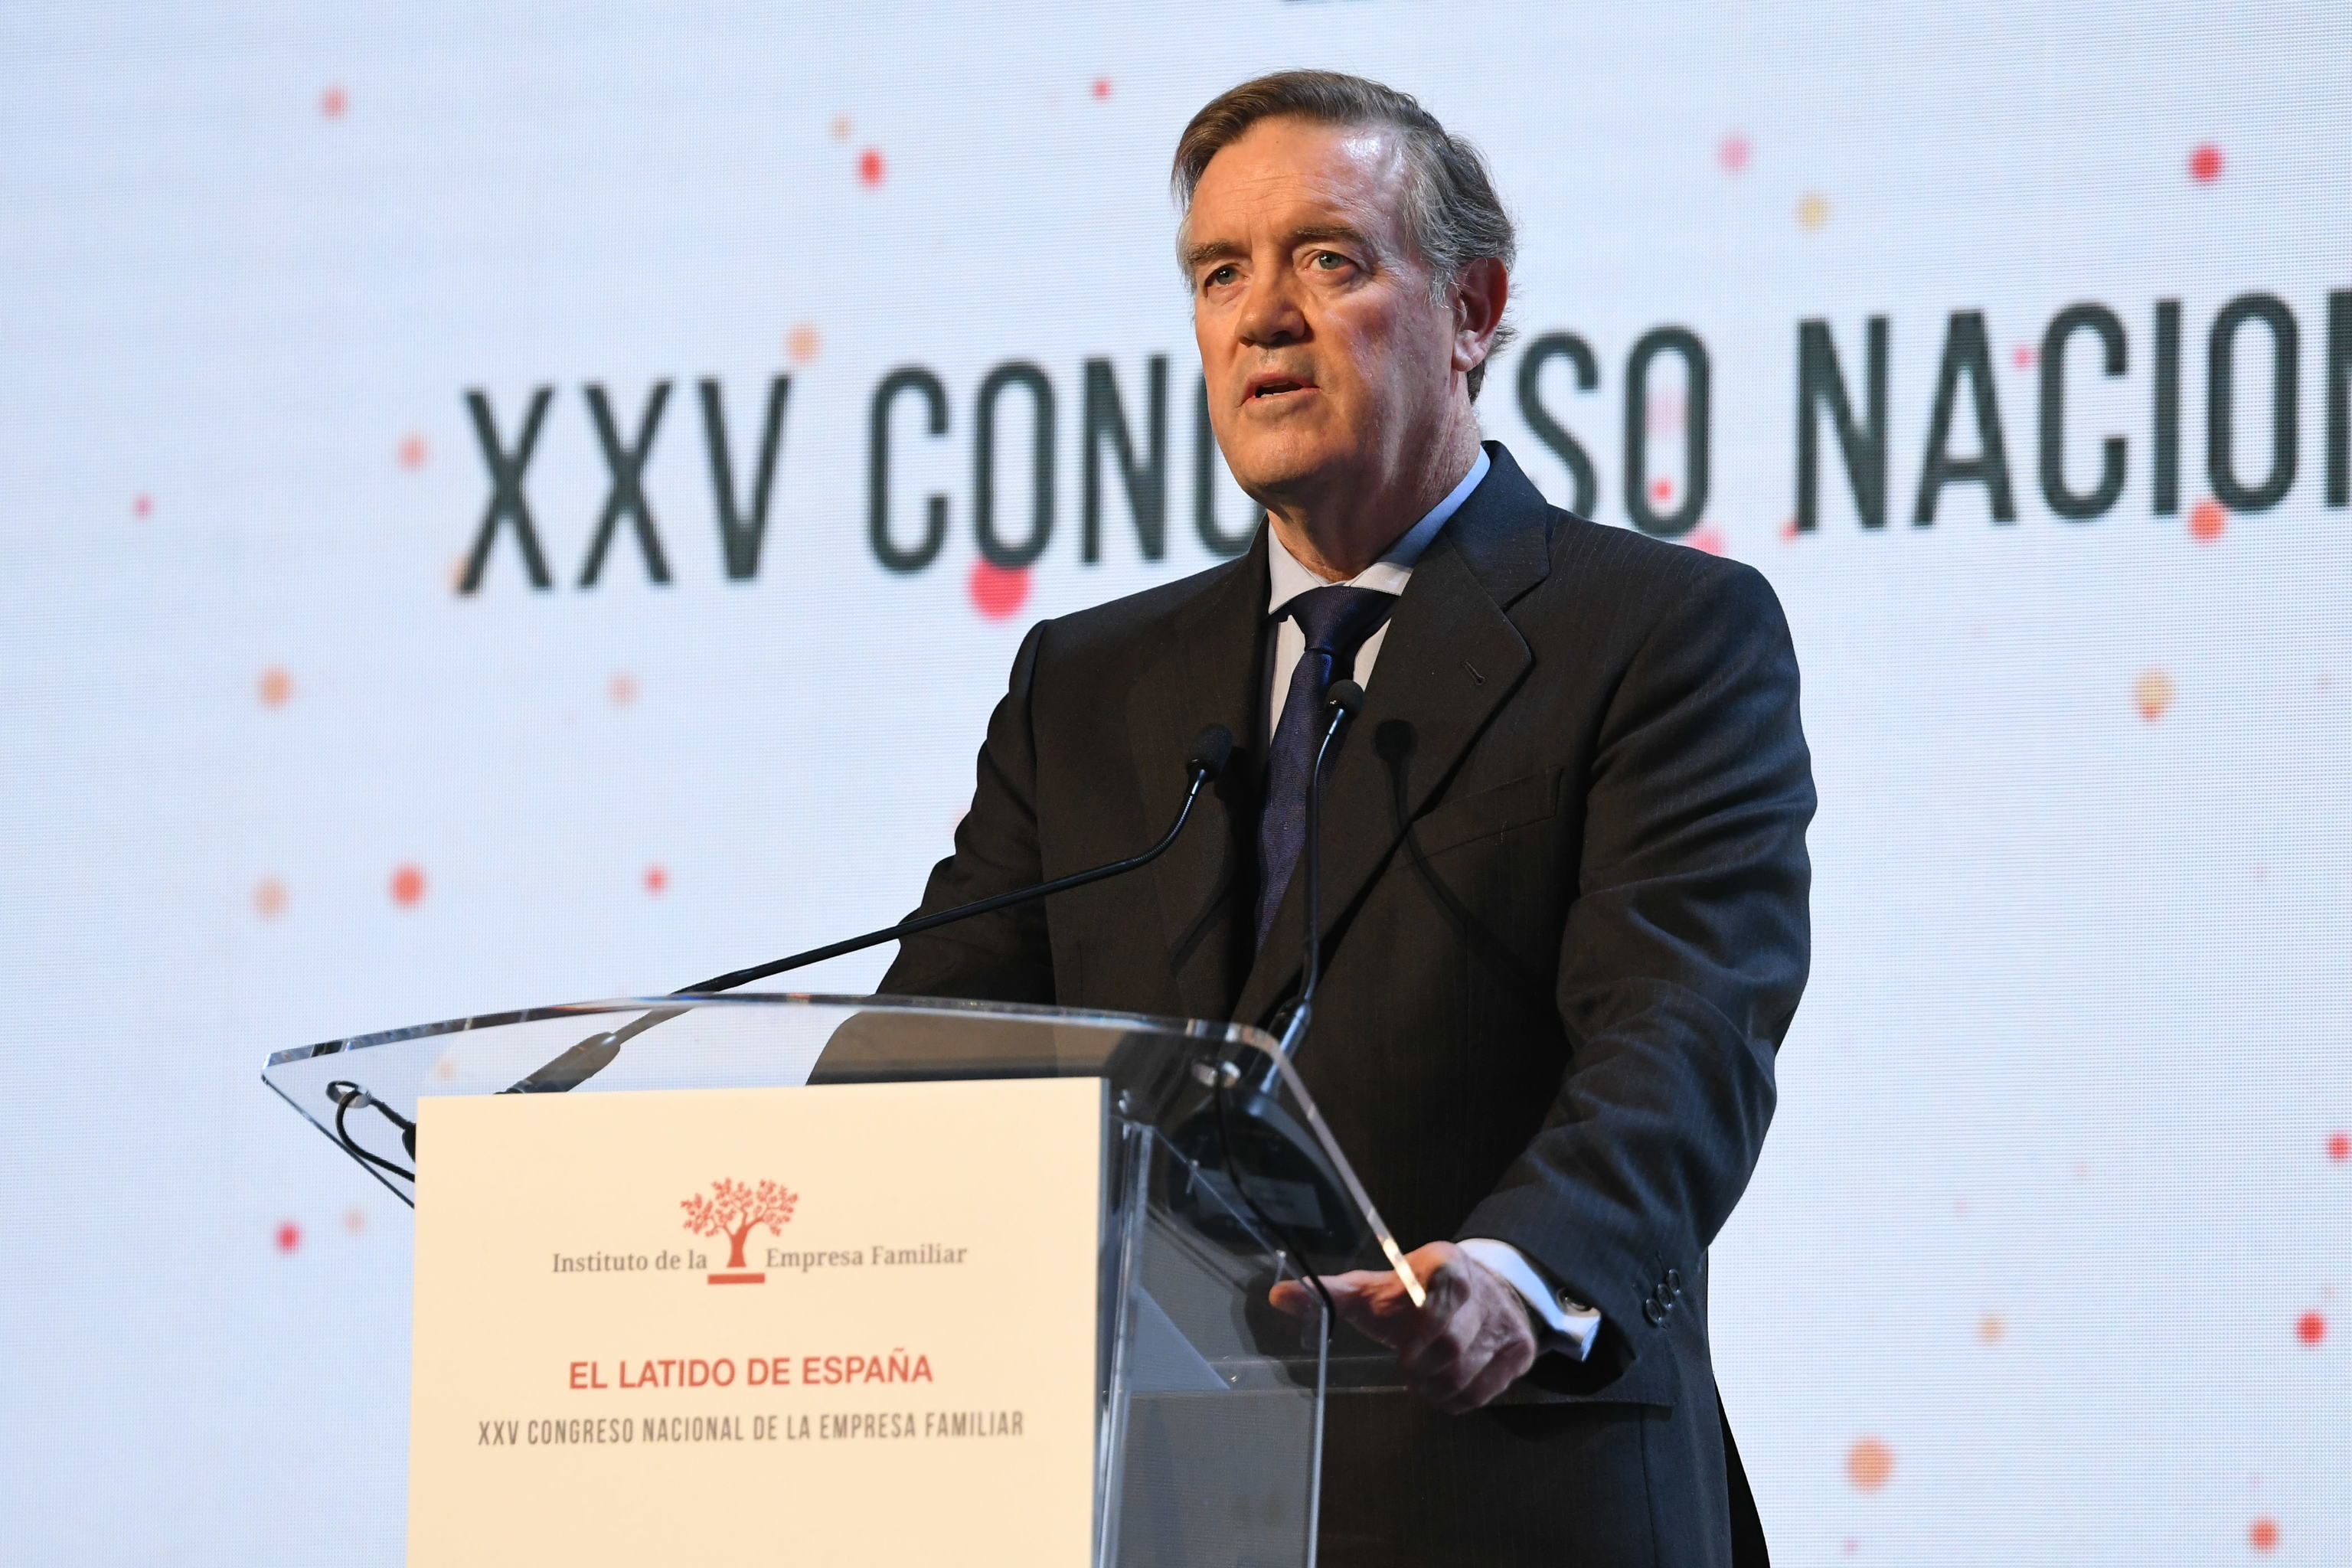 El presidente del IEF, Andrés Sendagorta, en la clausura del XXV Congreso de la Empresa Familiar